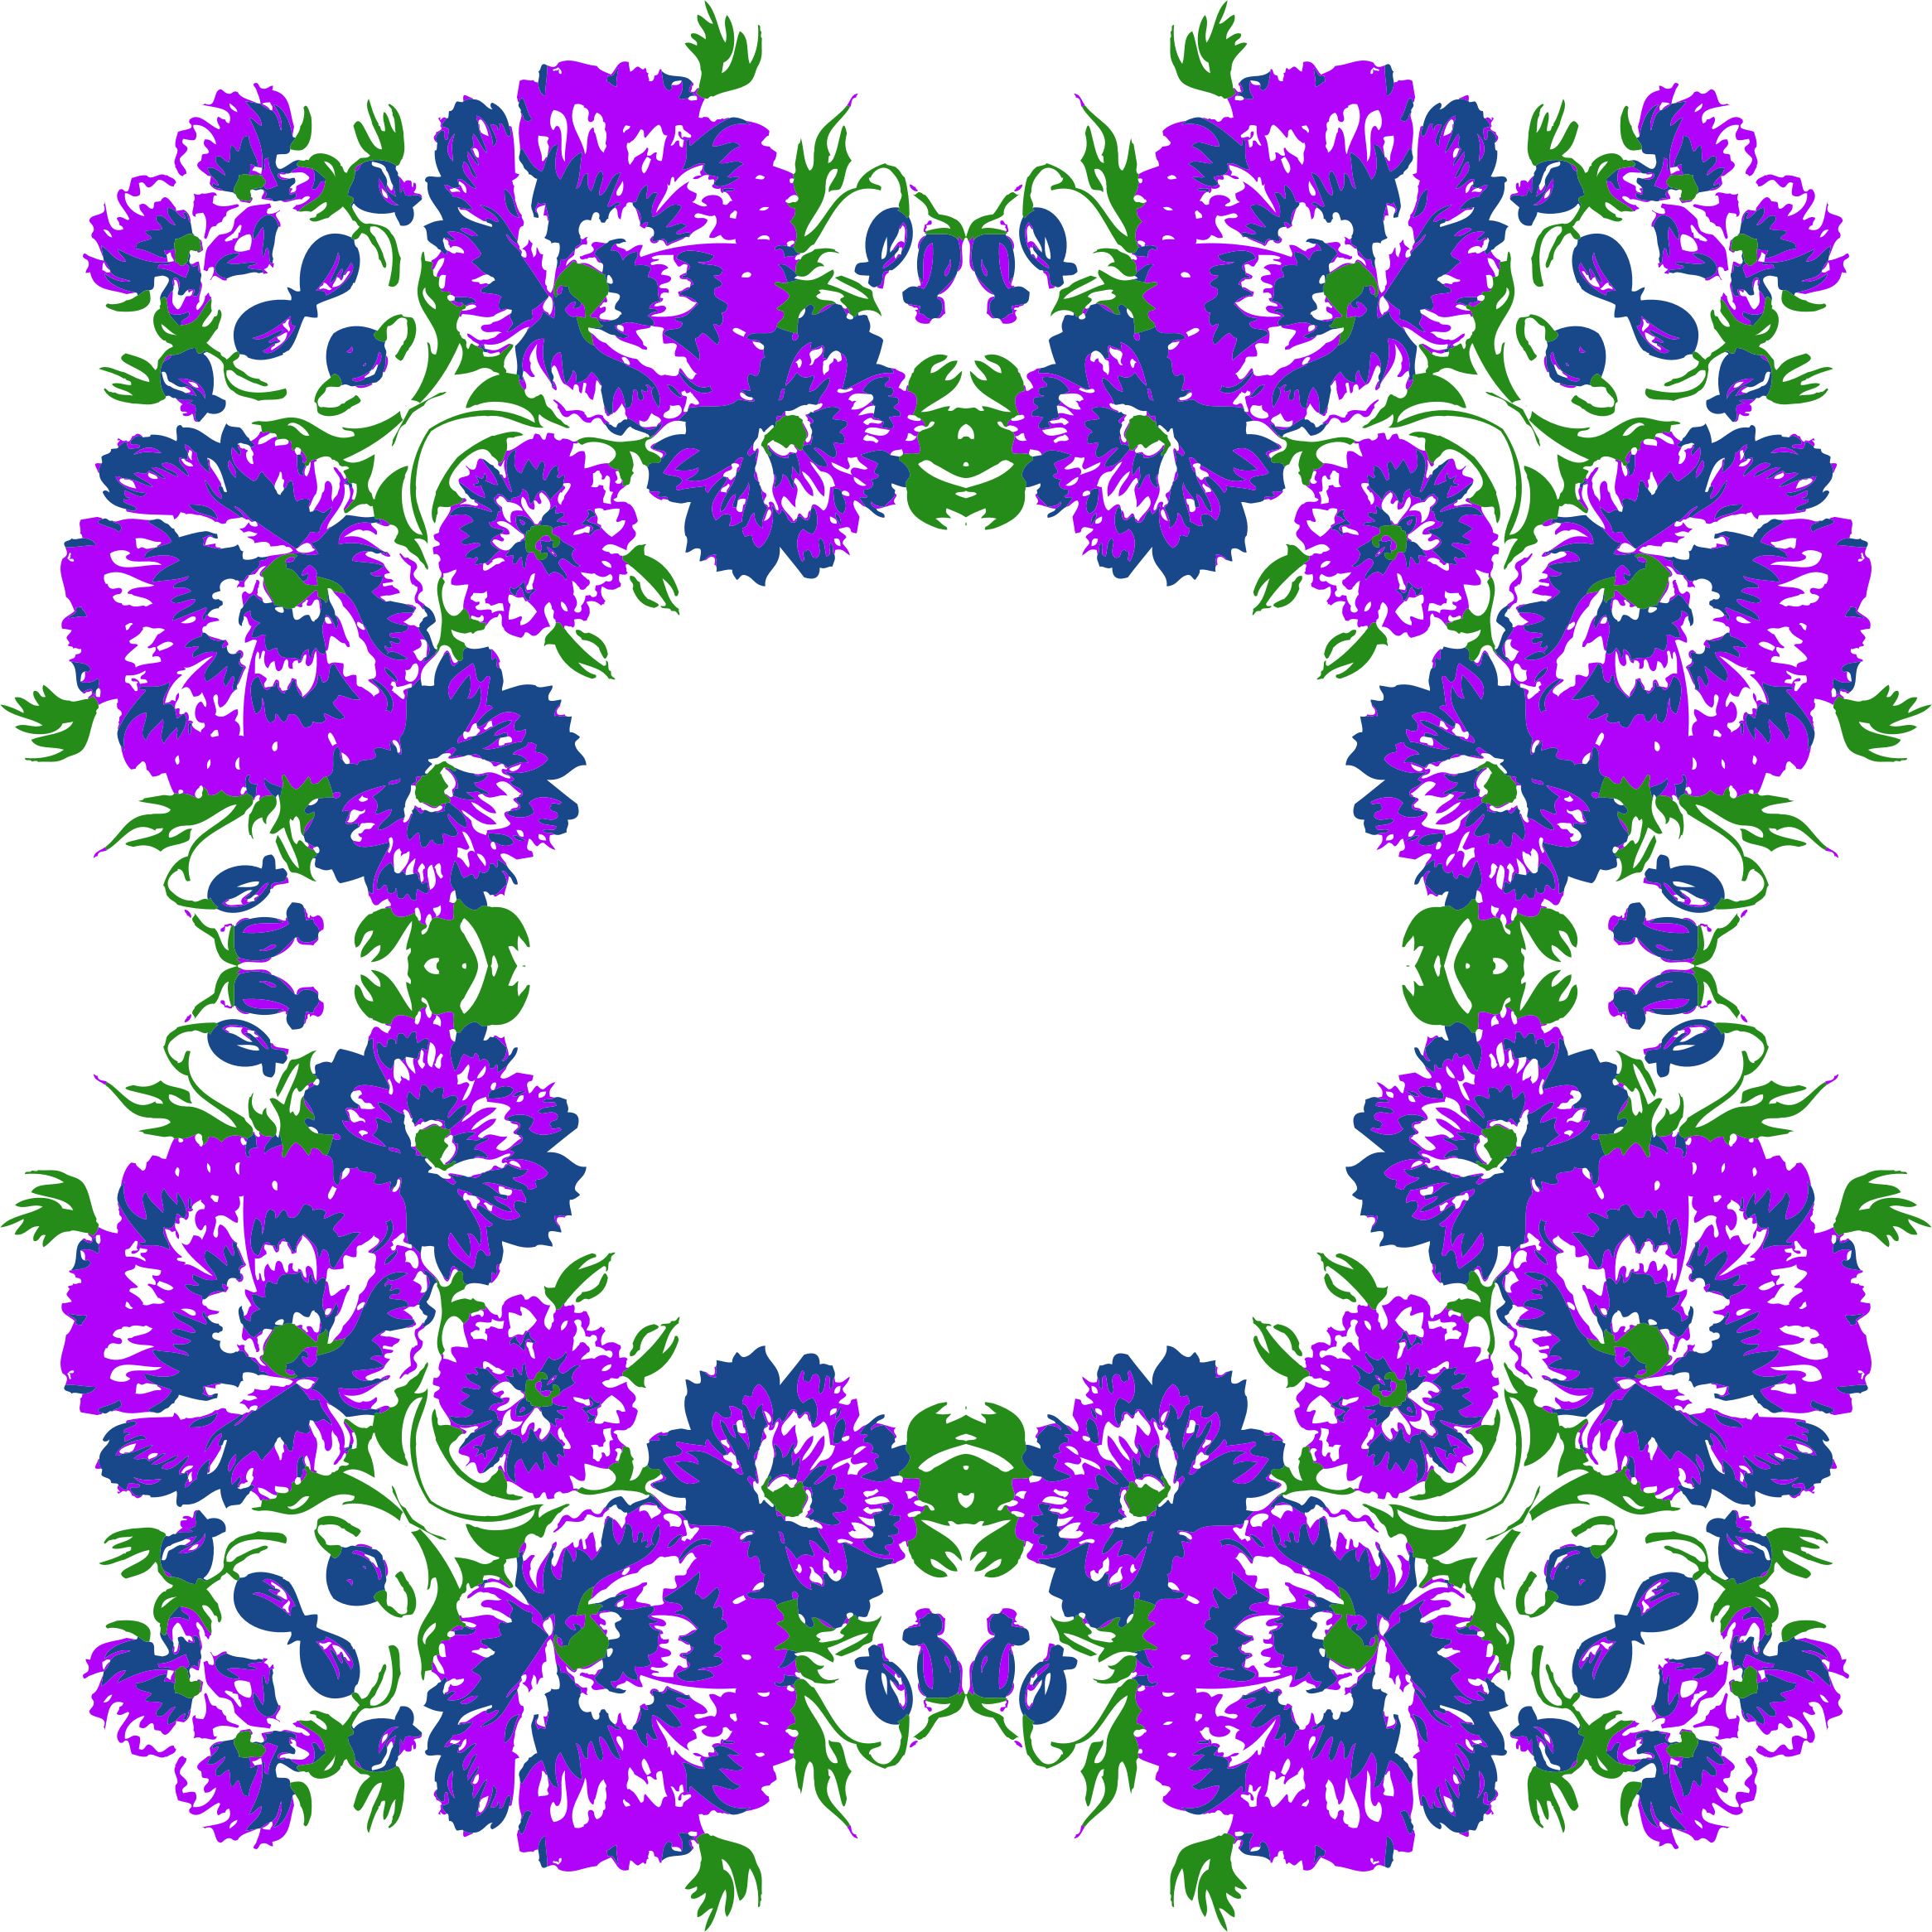 Floral Wreath Frame Variation 2 - Floral Wreath Frame Variation 2 (2332x2332)